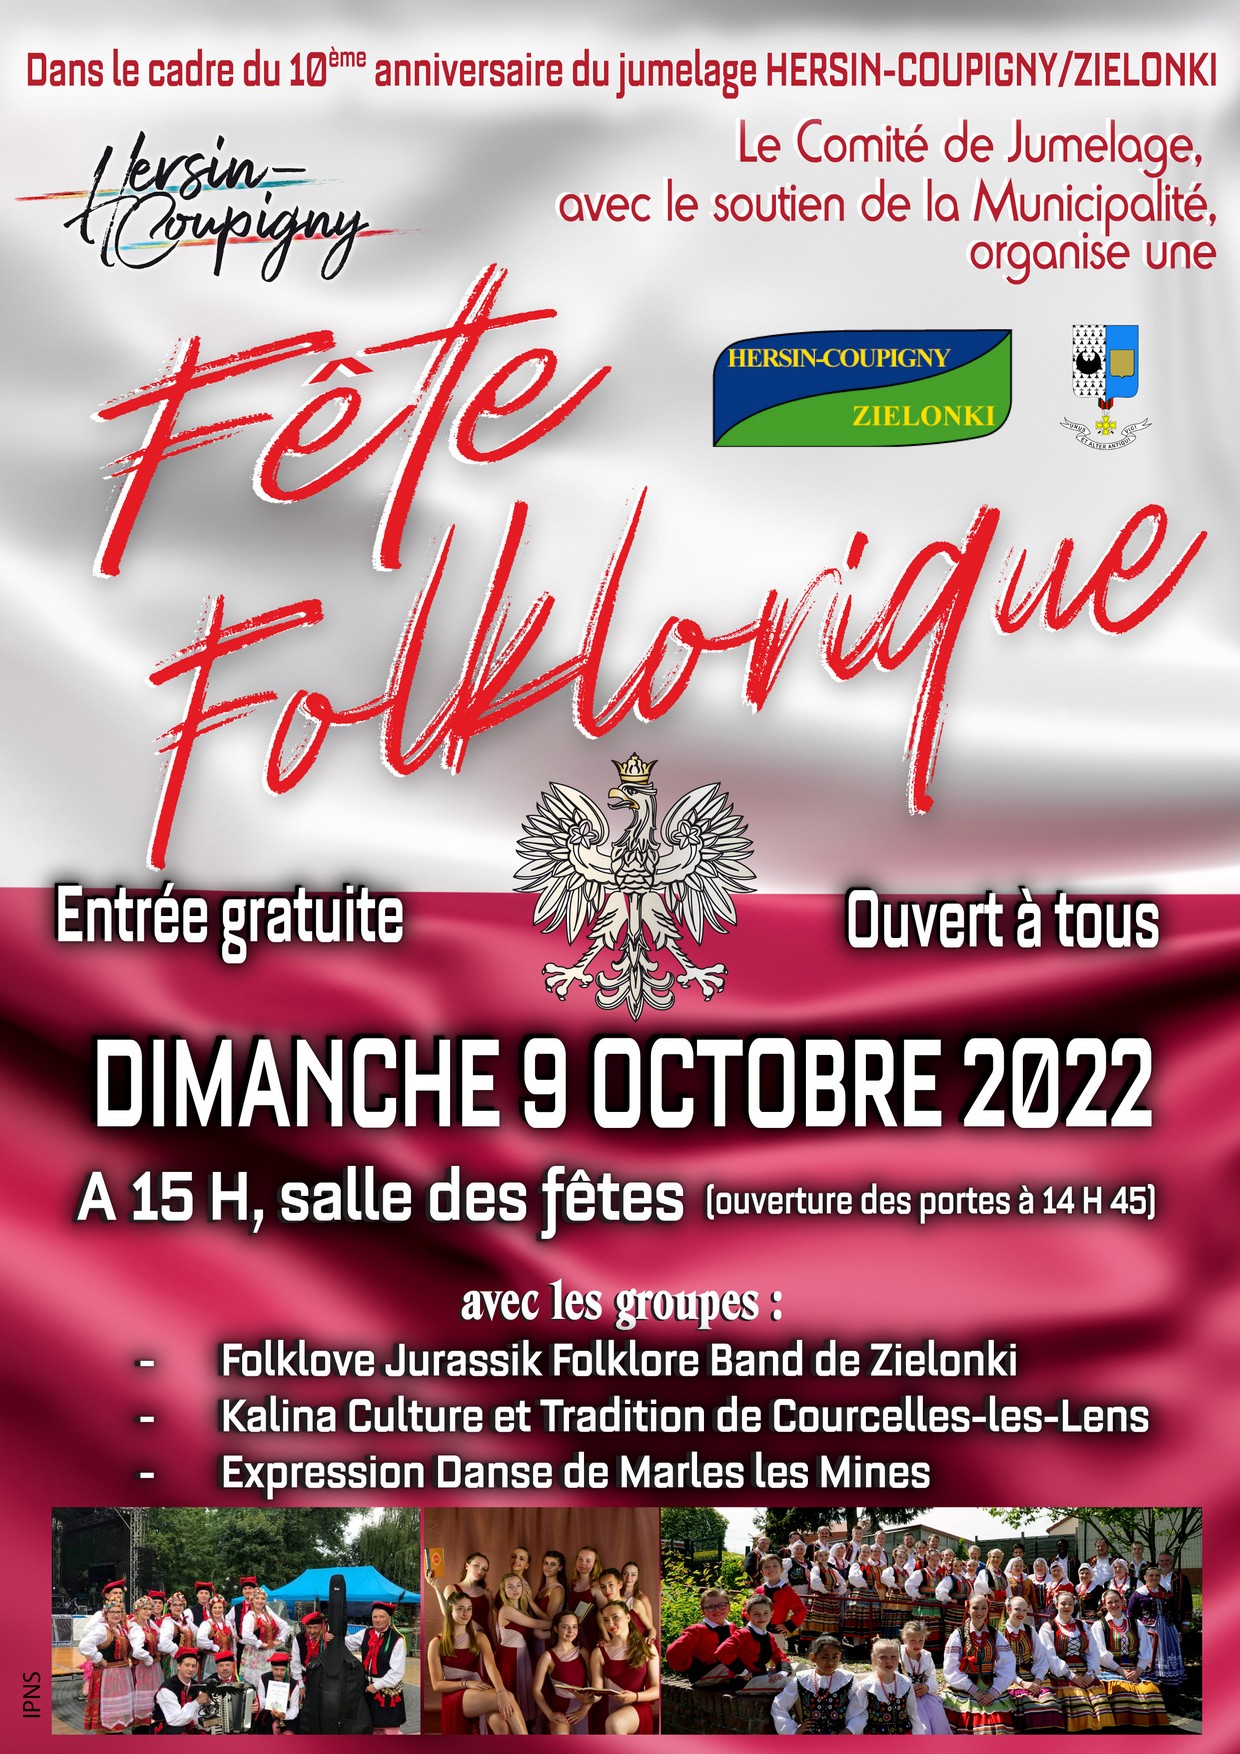 Fête folklorique : 10ème anniversaire du jumelage Hersin-Coupigny / Zielonki @ Salle des Fêtes | Hersin-Coupigny | Hauts-de-France | France